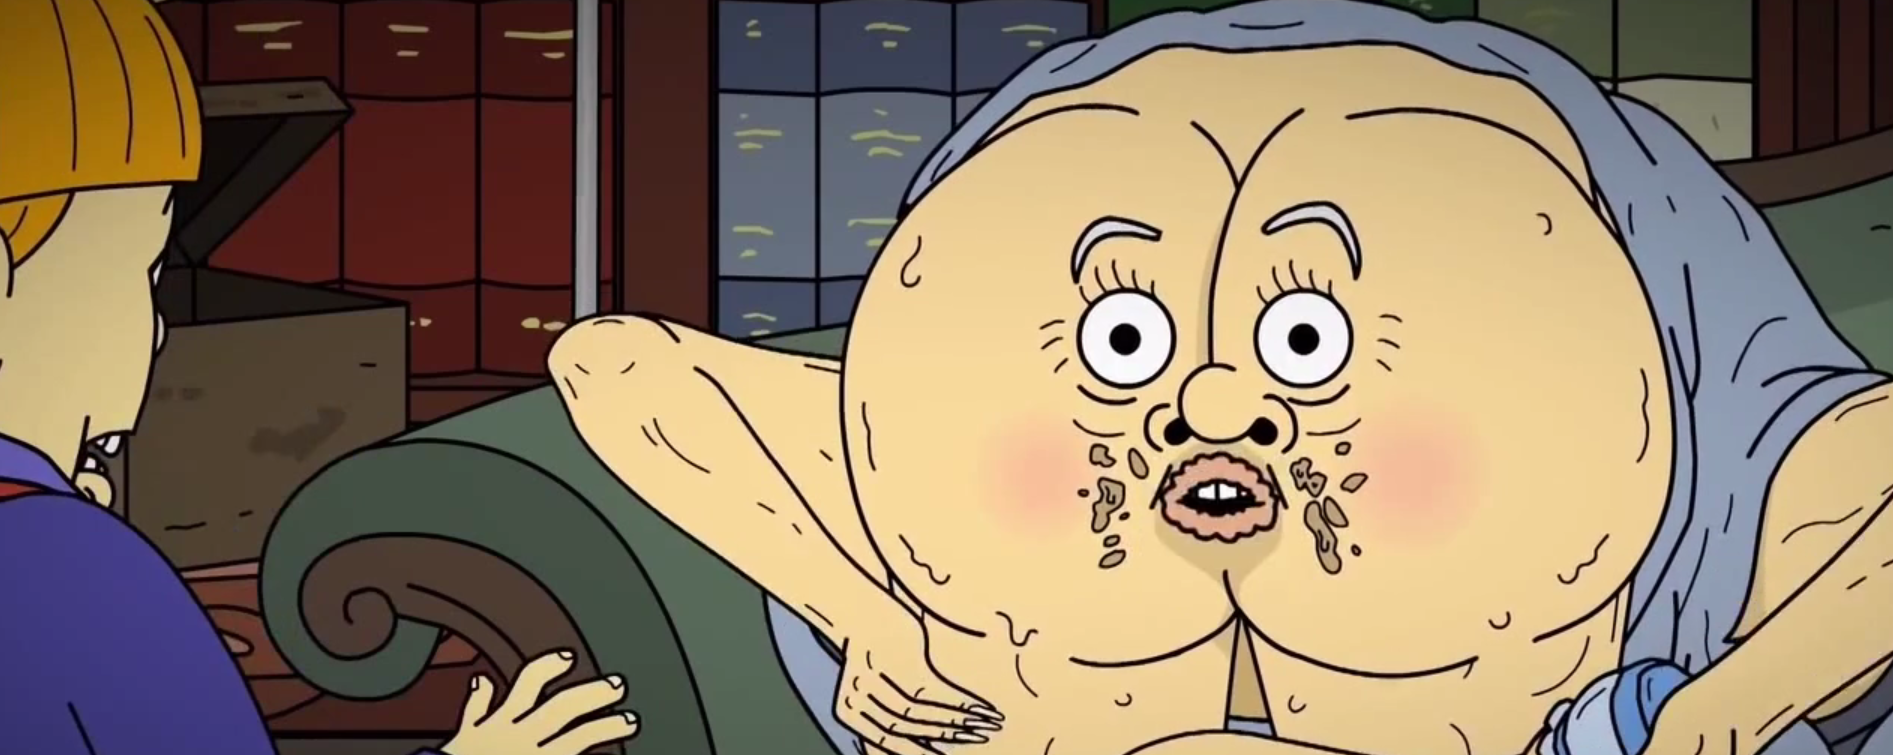 Review: Mr. Pickles My Dear Boy - Bubbleblabber